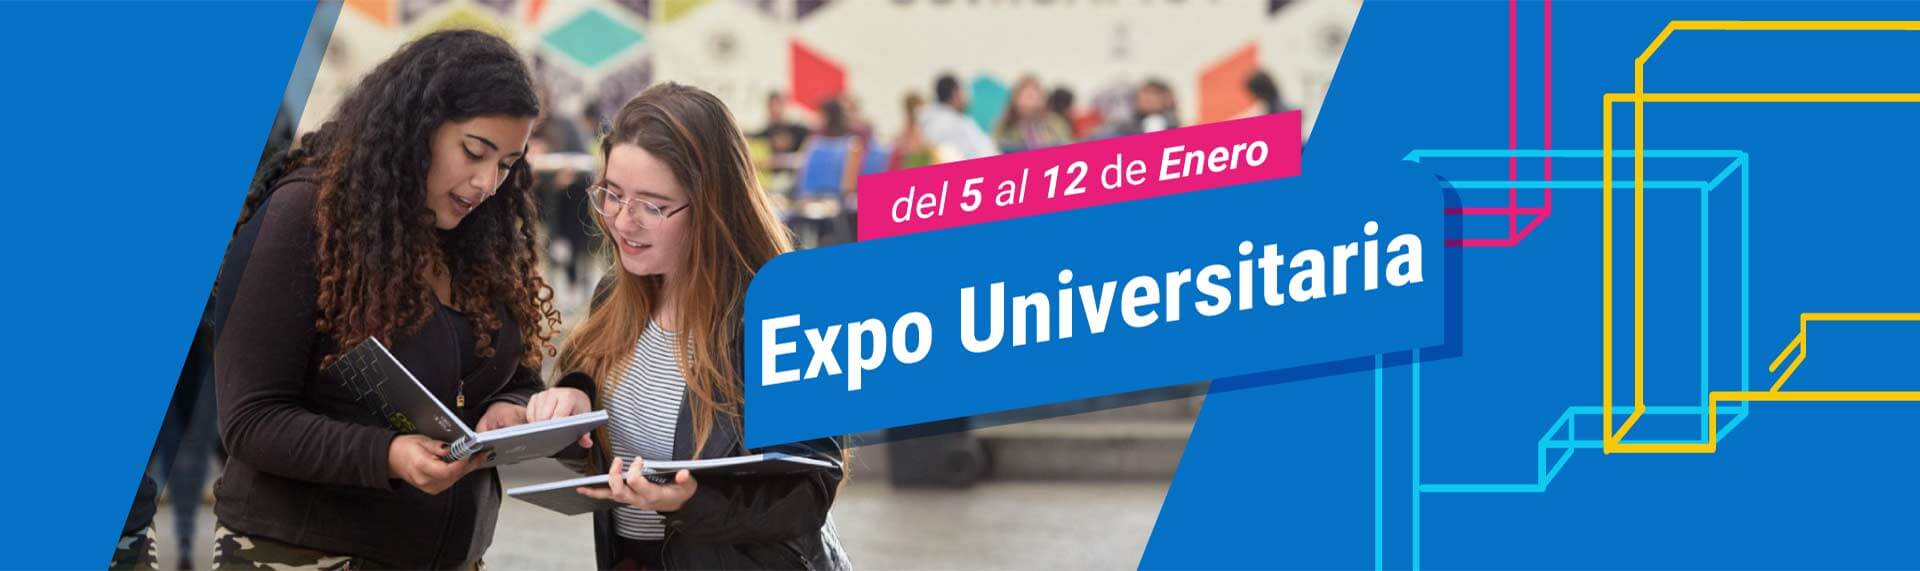 Expo Universitaria